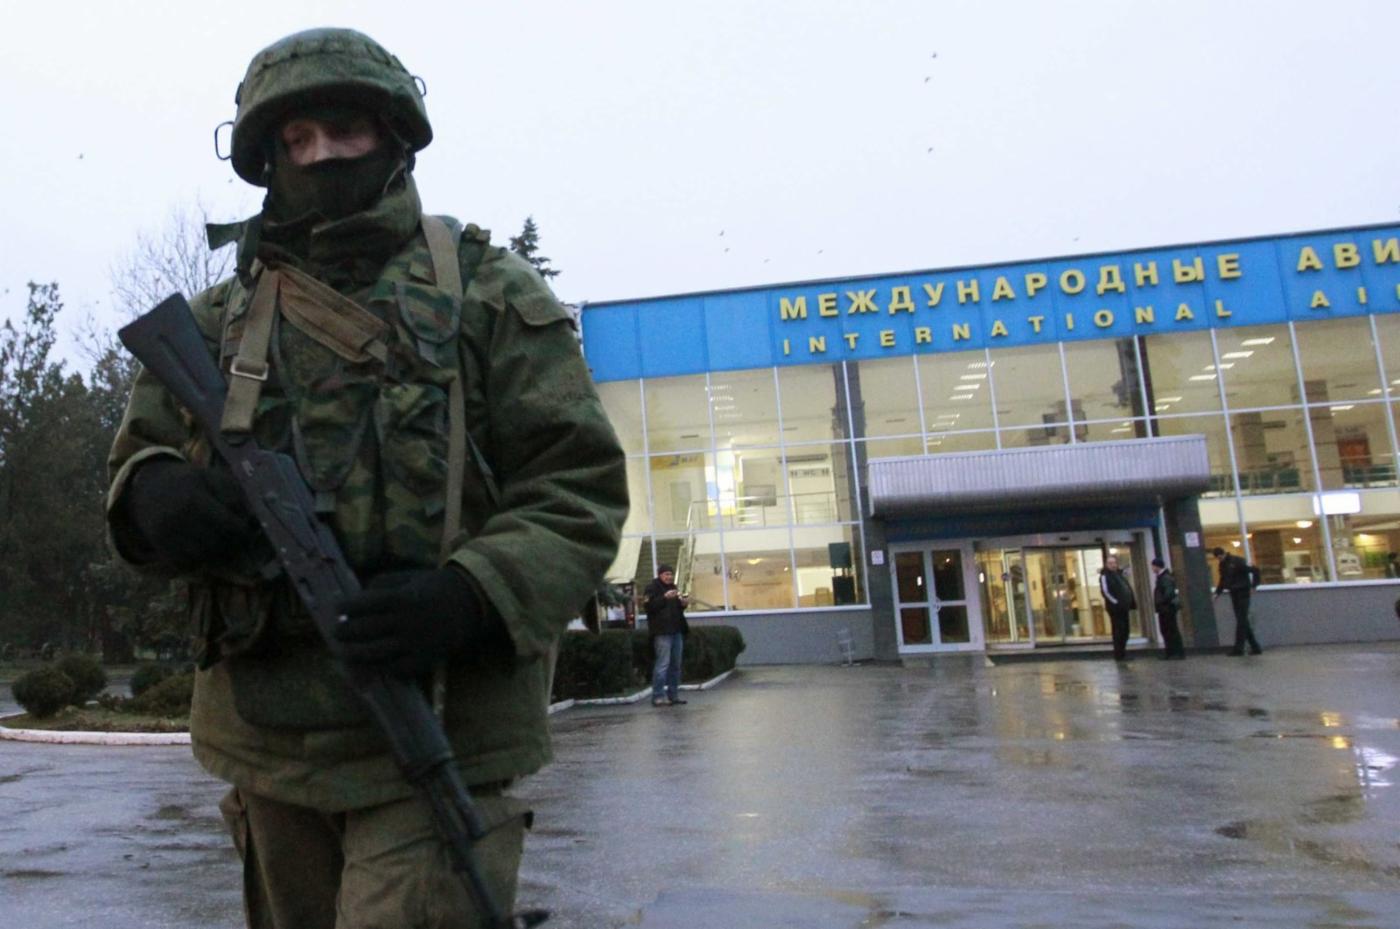  Незаконная аннексия Россией Крыма в 2014 году. Российский патруль дежурит у международного аэропорта в Крыму.
